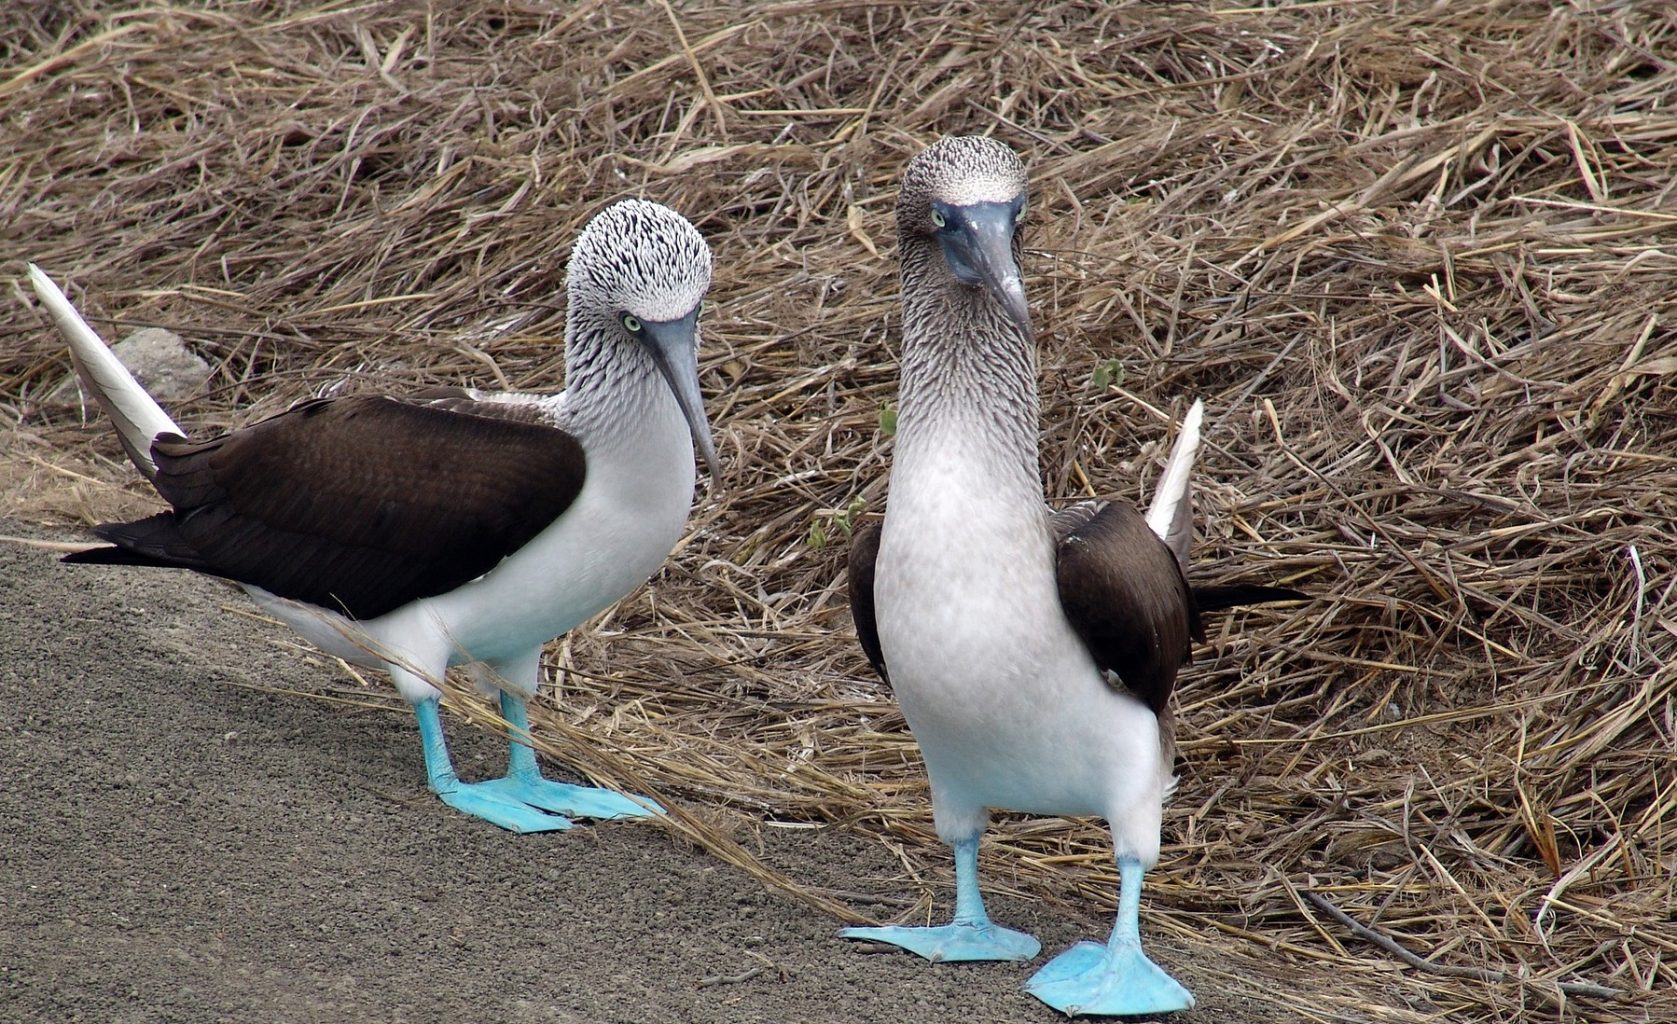 Par de Boobies de Pé Azul. Aves endêmicas da América Latina